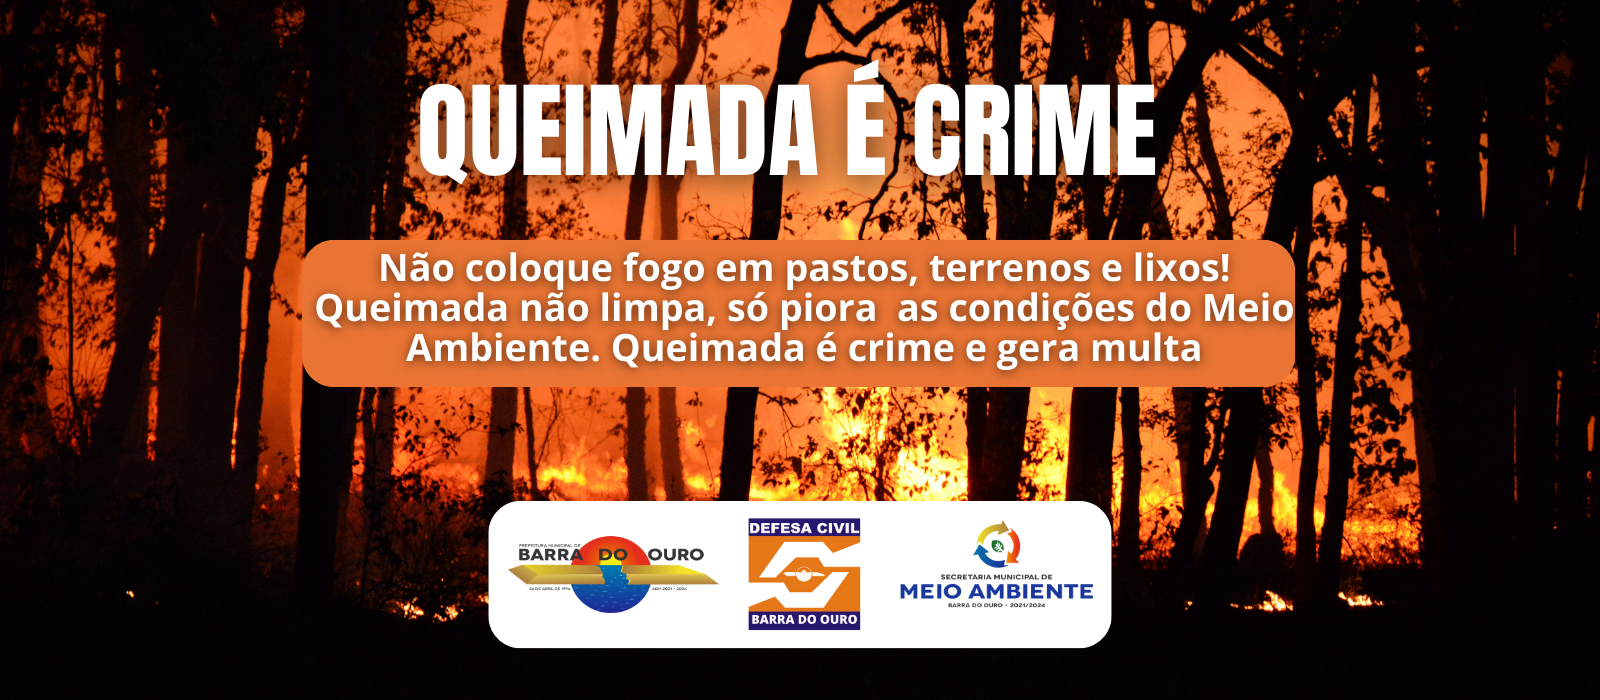 Secretaria de Meio Ambiente de Barra do Ouro lança campanha de conscientização pelo fim das queimadas urbanas e rurais 